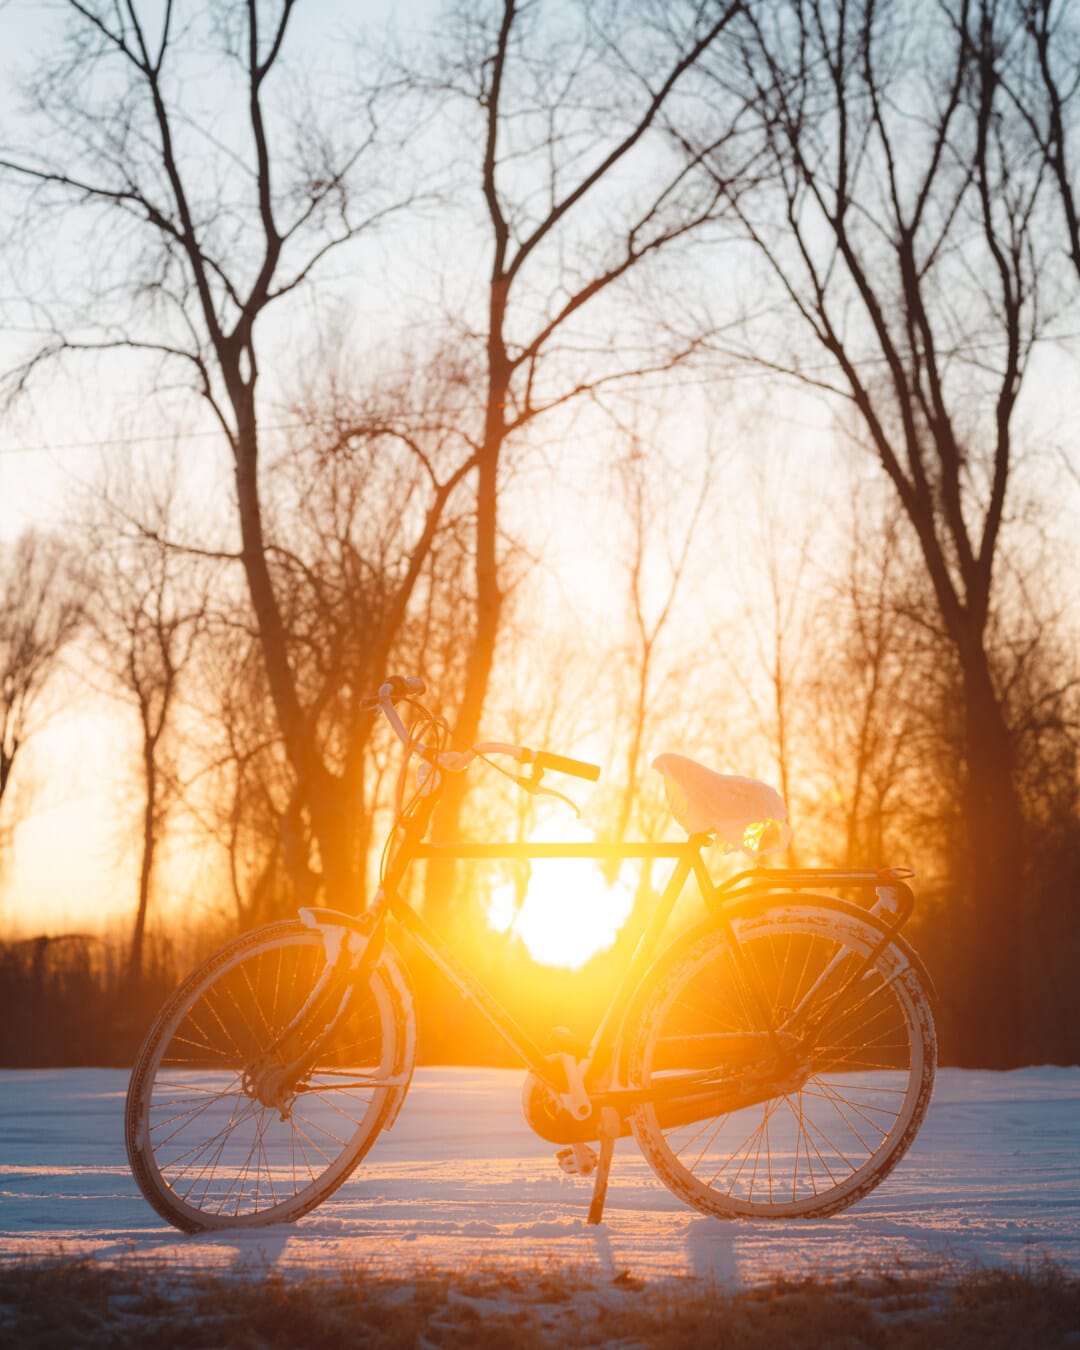 Luz del sol, brillante, Mancha solar, bicicleta, silueta, retroiluminada, vehículo, amanecer, puesta de sol, tiempo en Feria